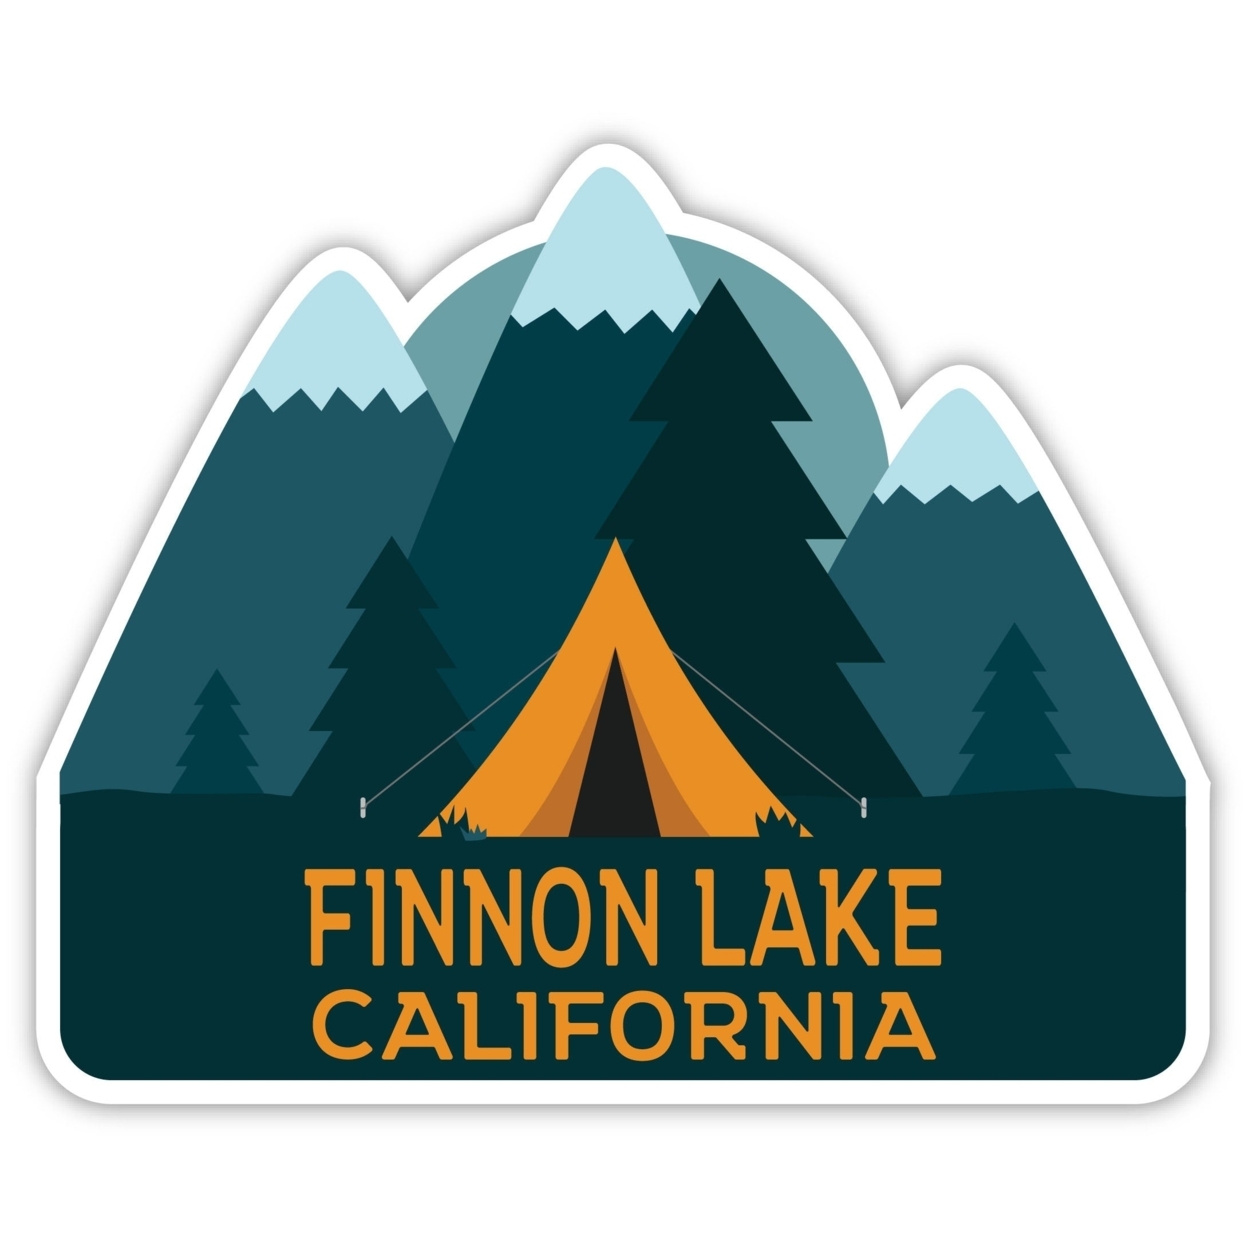 Finnon Lake California Souvenir Decorative Stickers (Choose Theme And Size) - Single Unit, 12-Inch, Tent